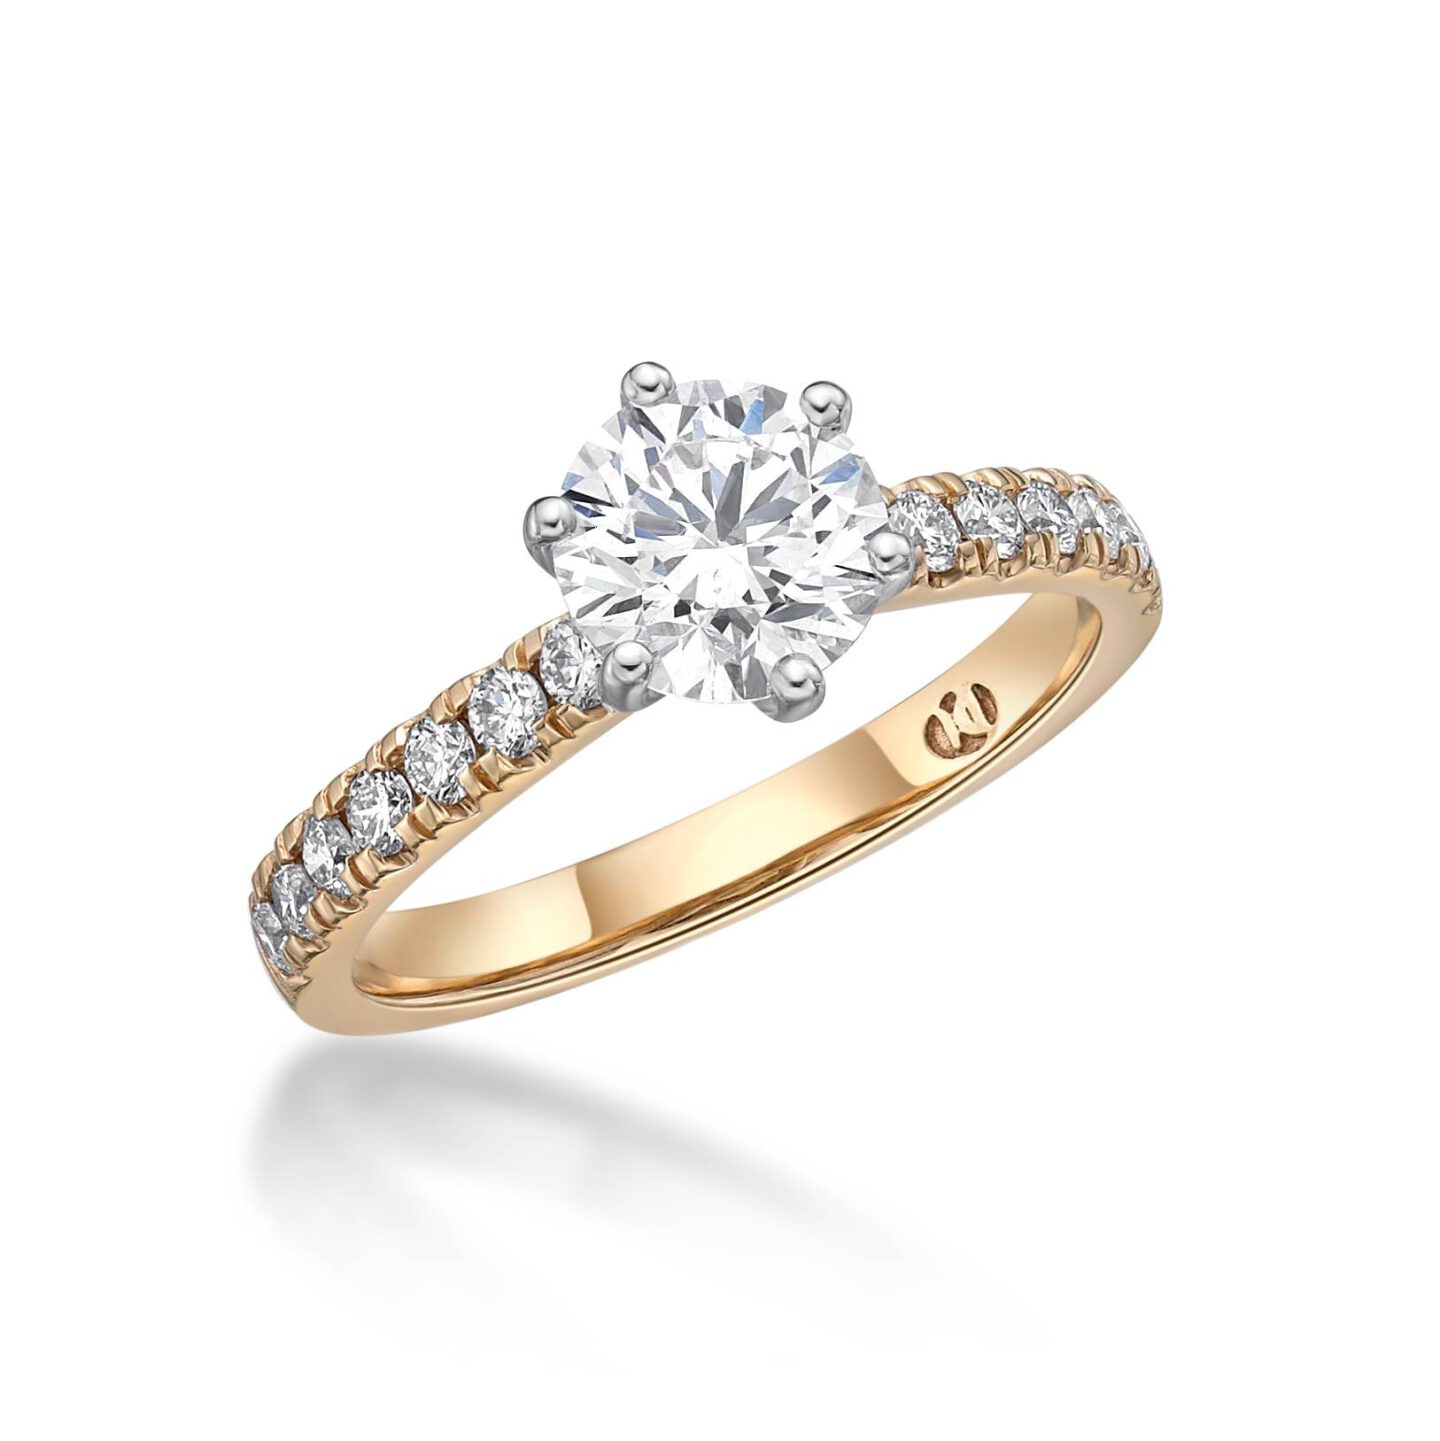 Amara – Round Brilliant Cut Diamond Engagement Ring